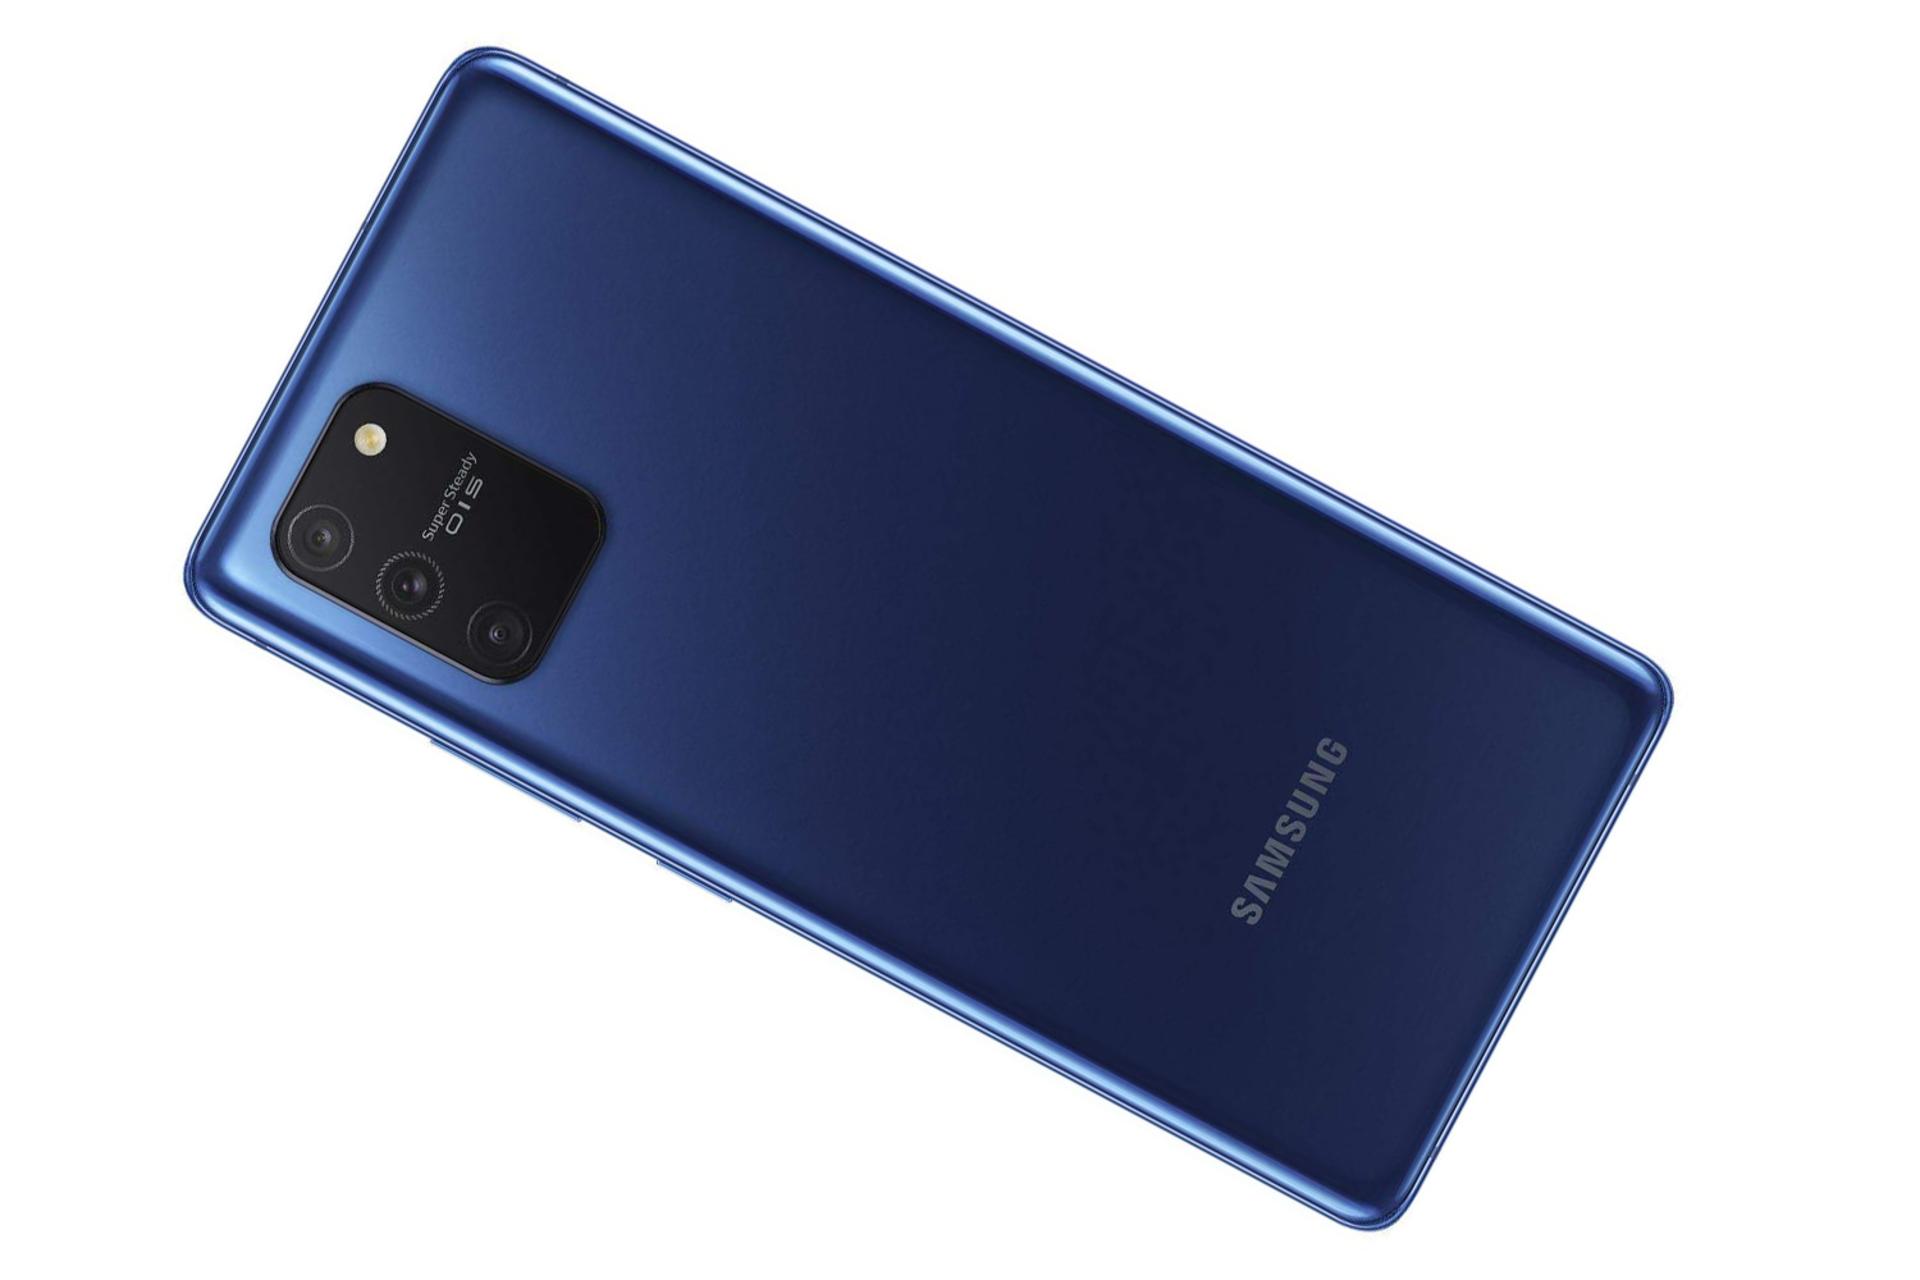 مرجع متخصصين ايران پشت موبايل Samsung Galaxy S10 Lite با رنگ سرمه اي